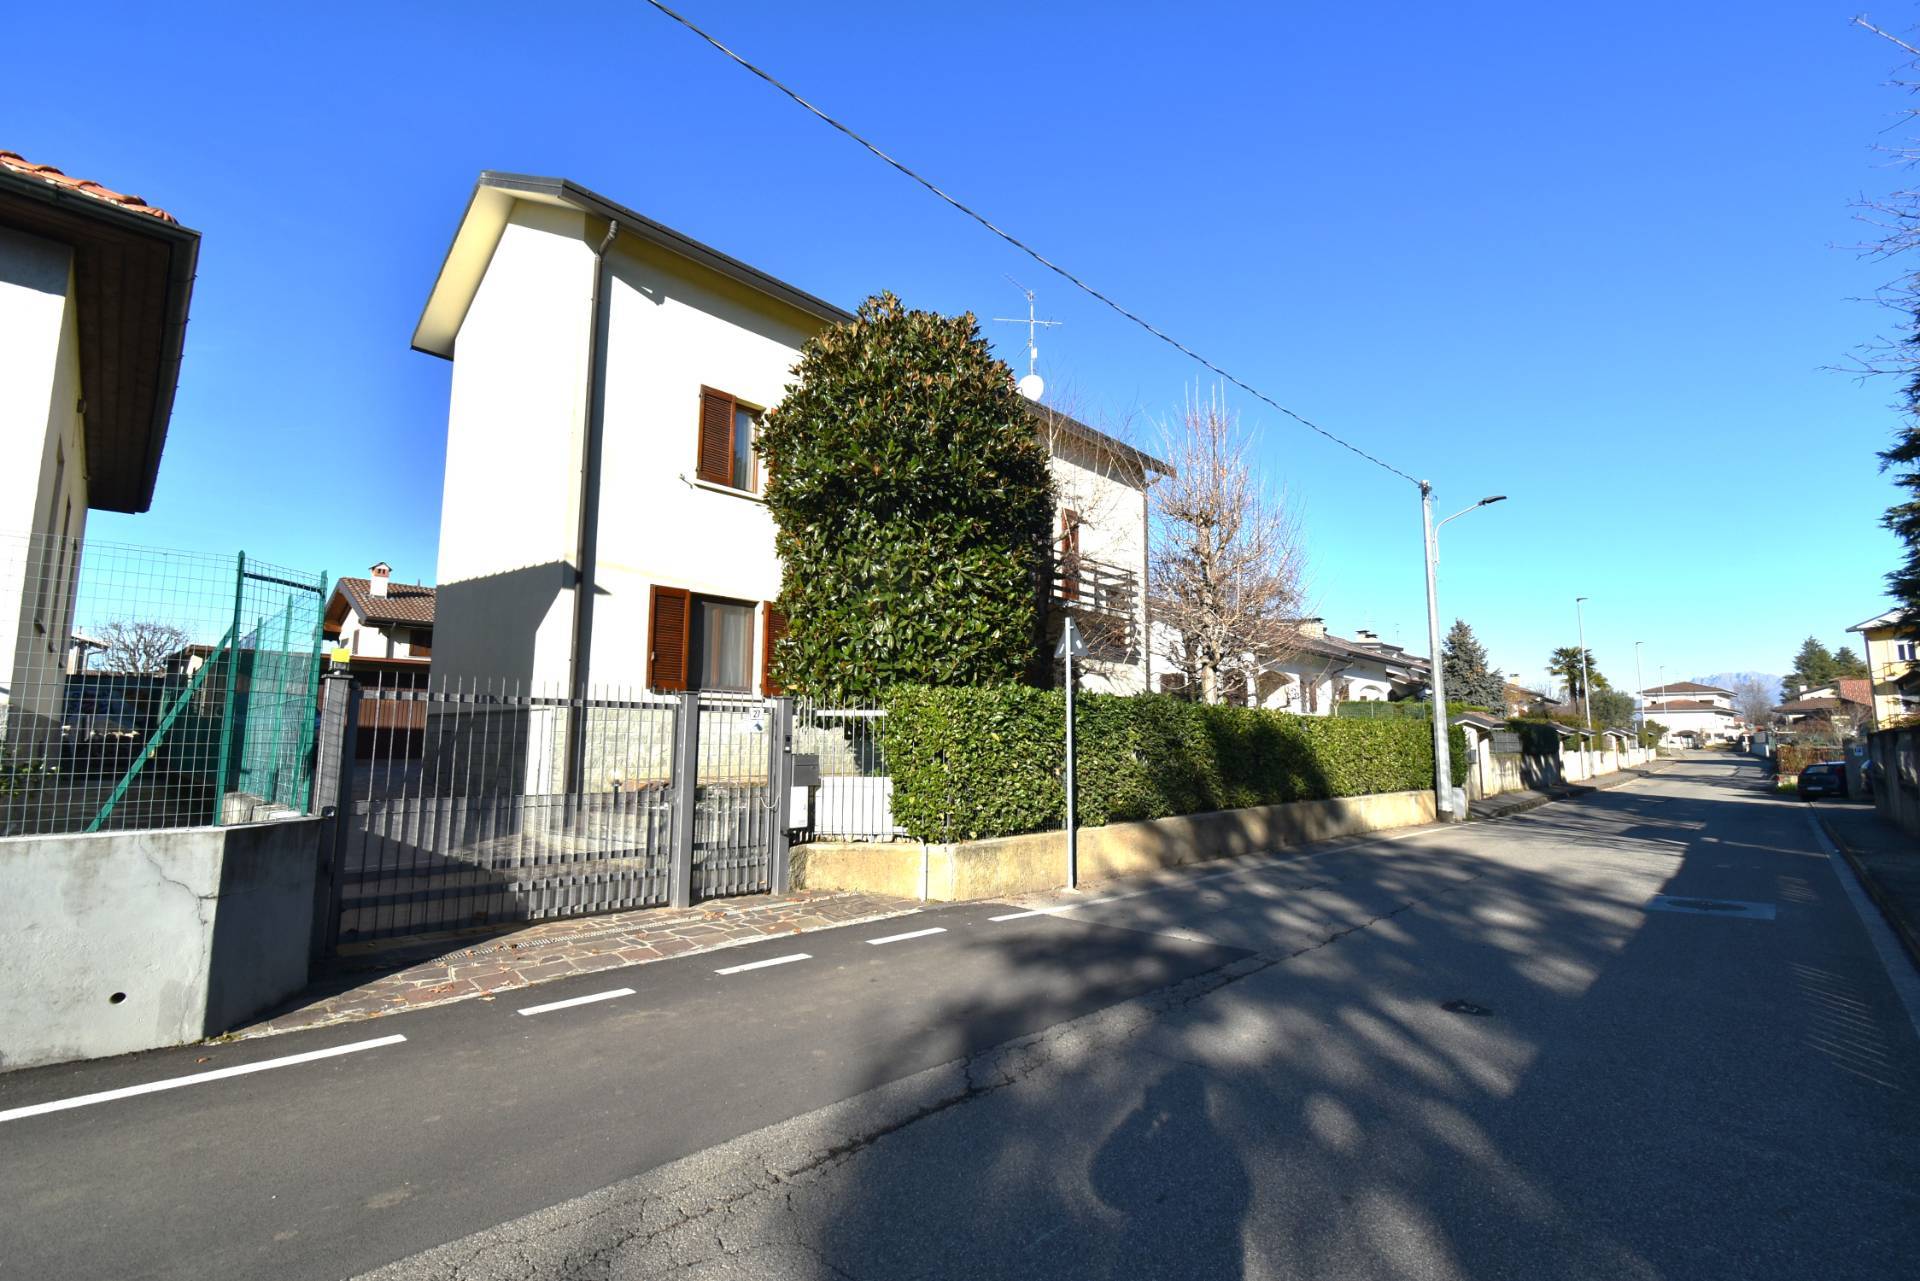 Villa in vendita a Bernareggio, 5 locali, prezzo € 380.000 | PortaleAgenzieImmobiliari.it